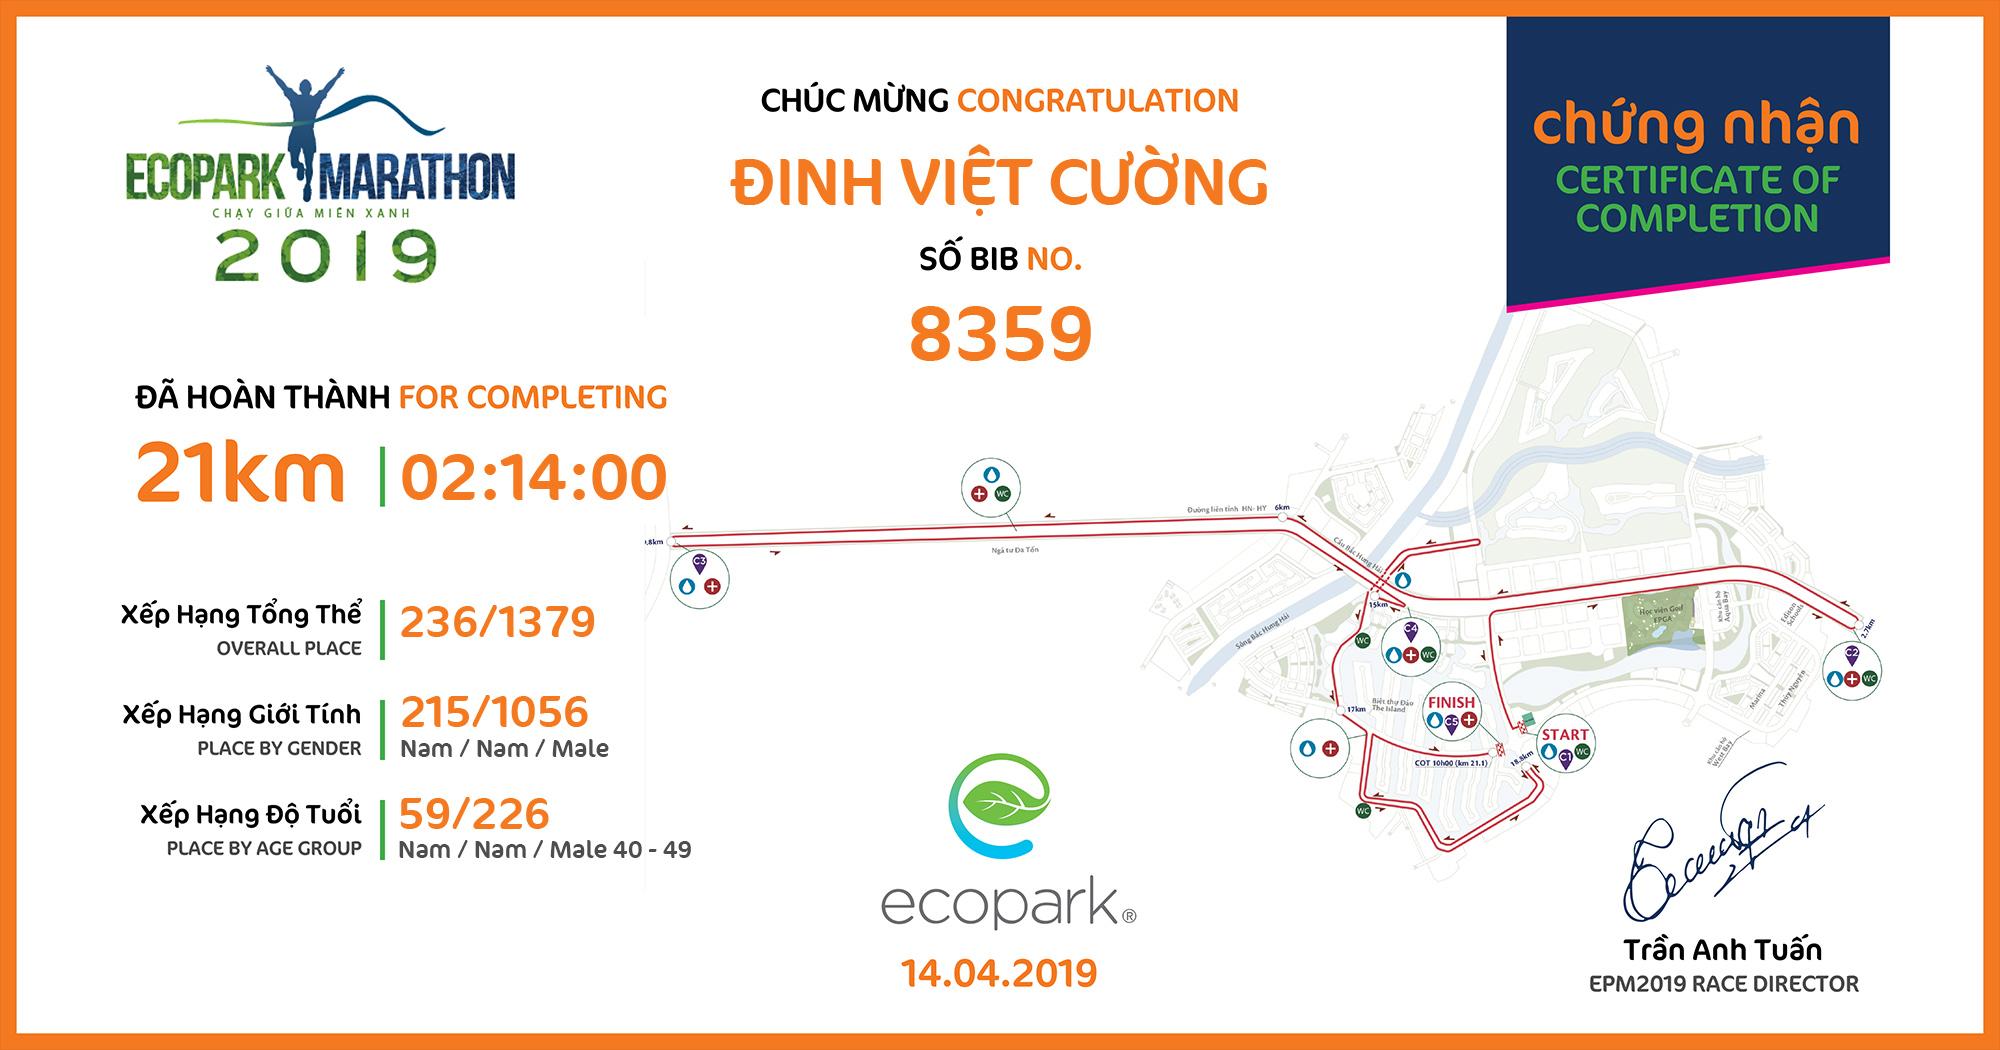 8359 - Đinh Việt Cường